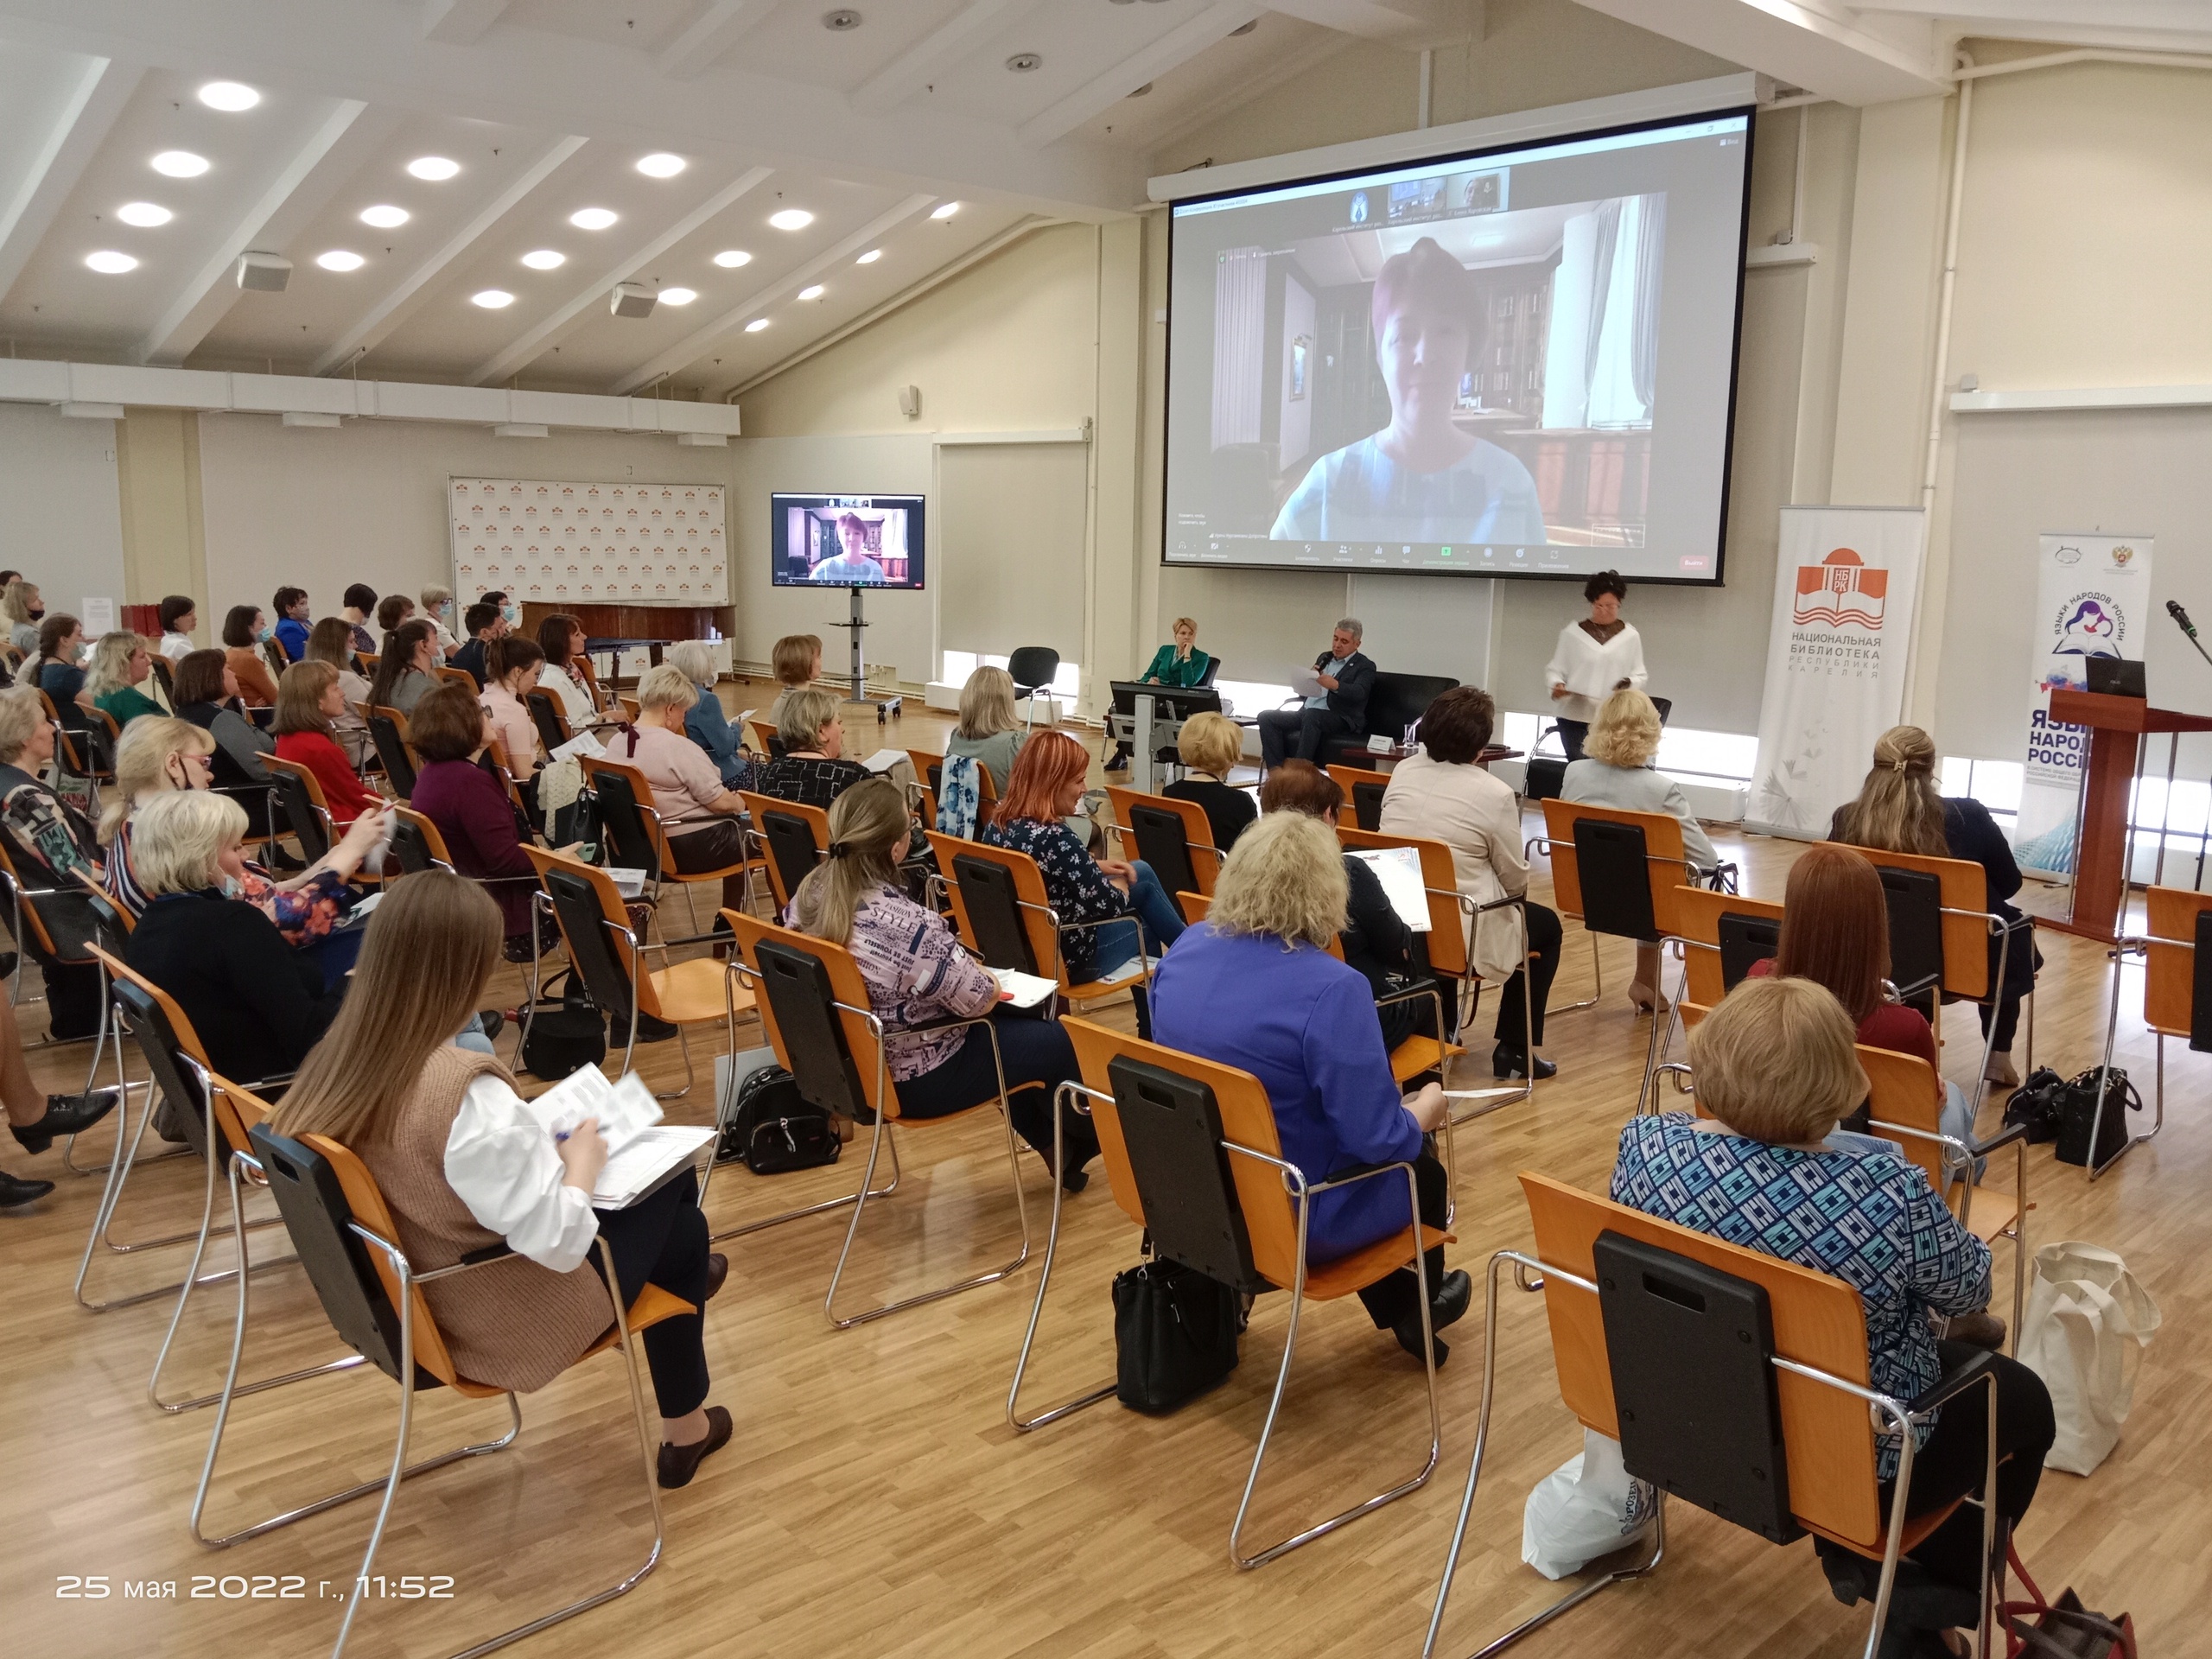 Venäjän kansojen kielille omistettu seminaari pidettiin Kansallisessa kirjastossa. Kuva: Jana Filimonkova